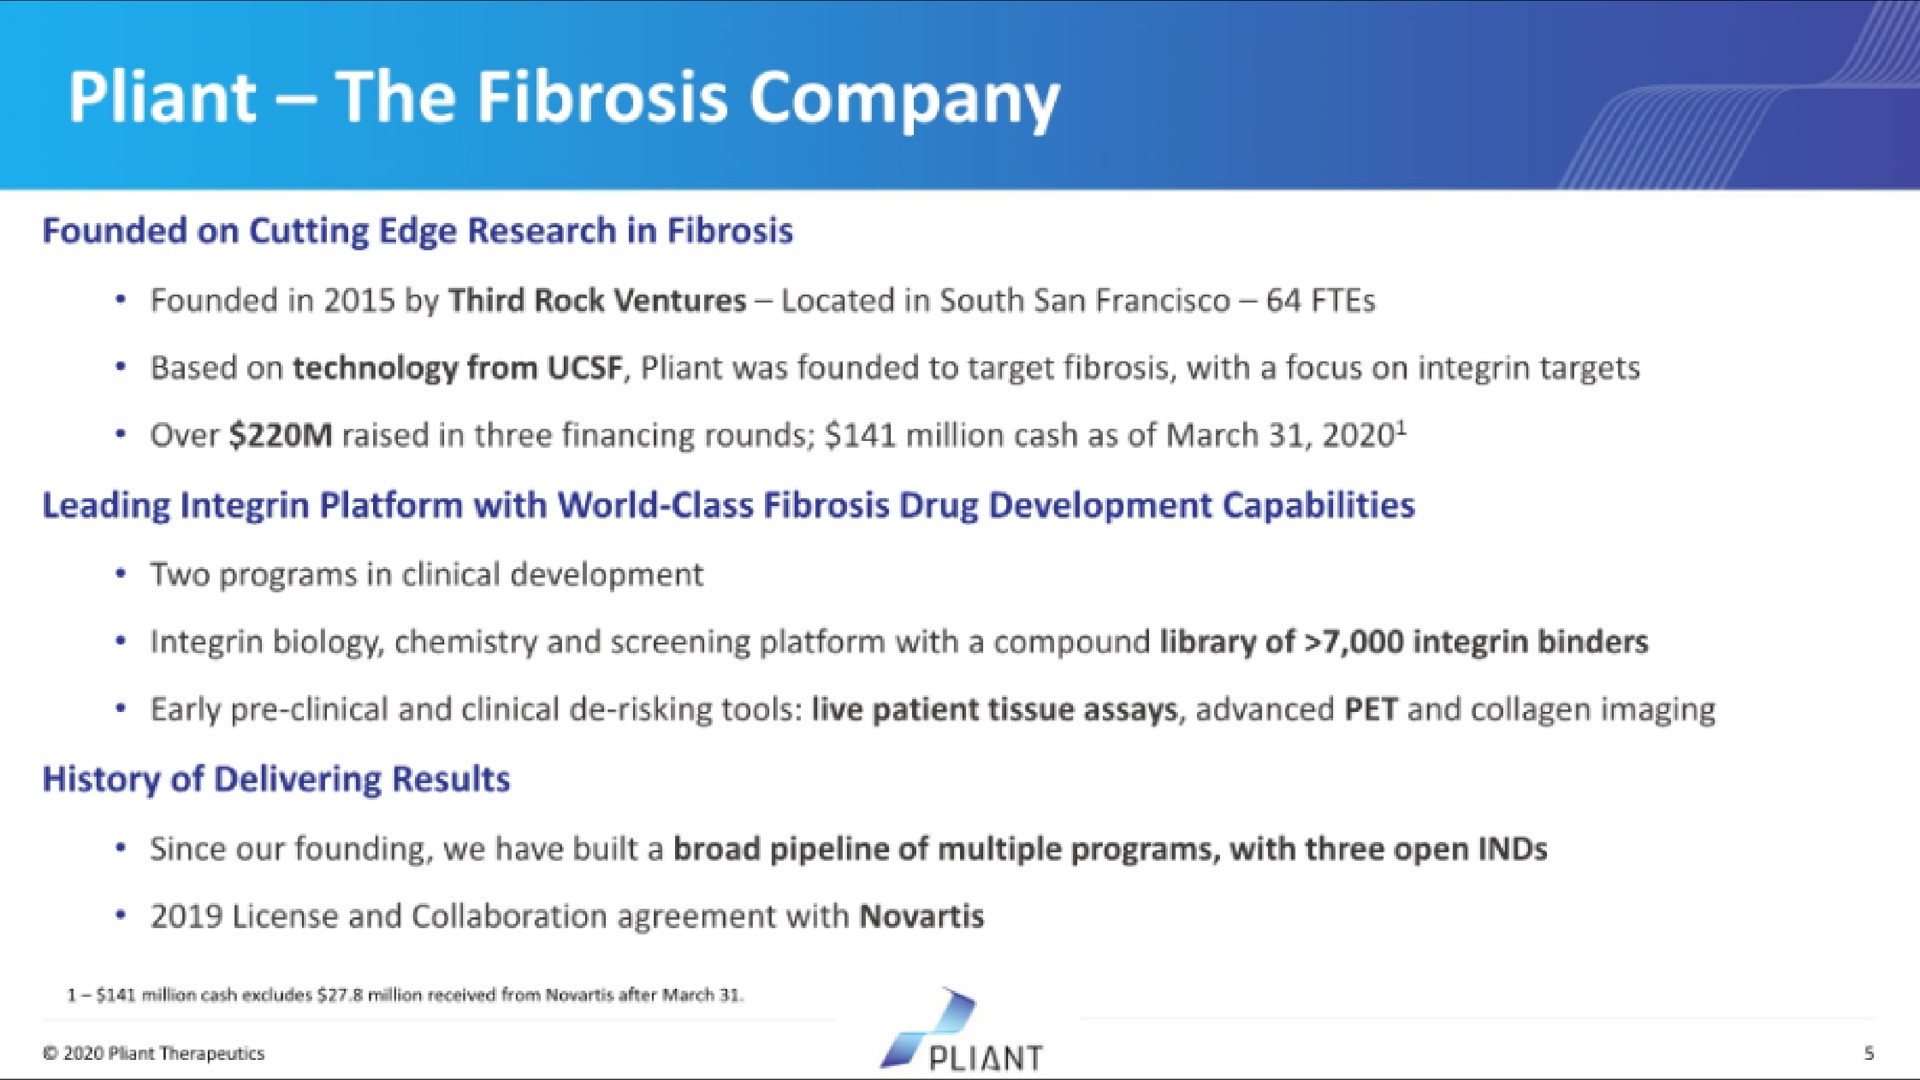 pliant the fibrosis company | Pilant Therapeutics